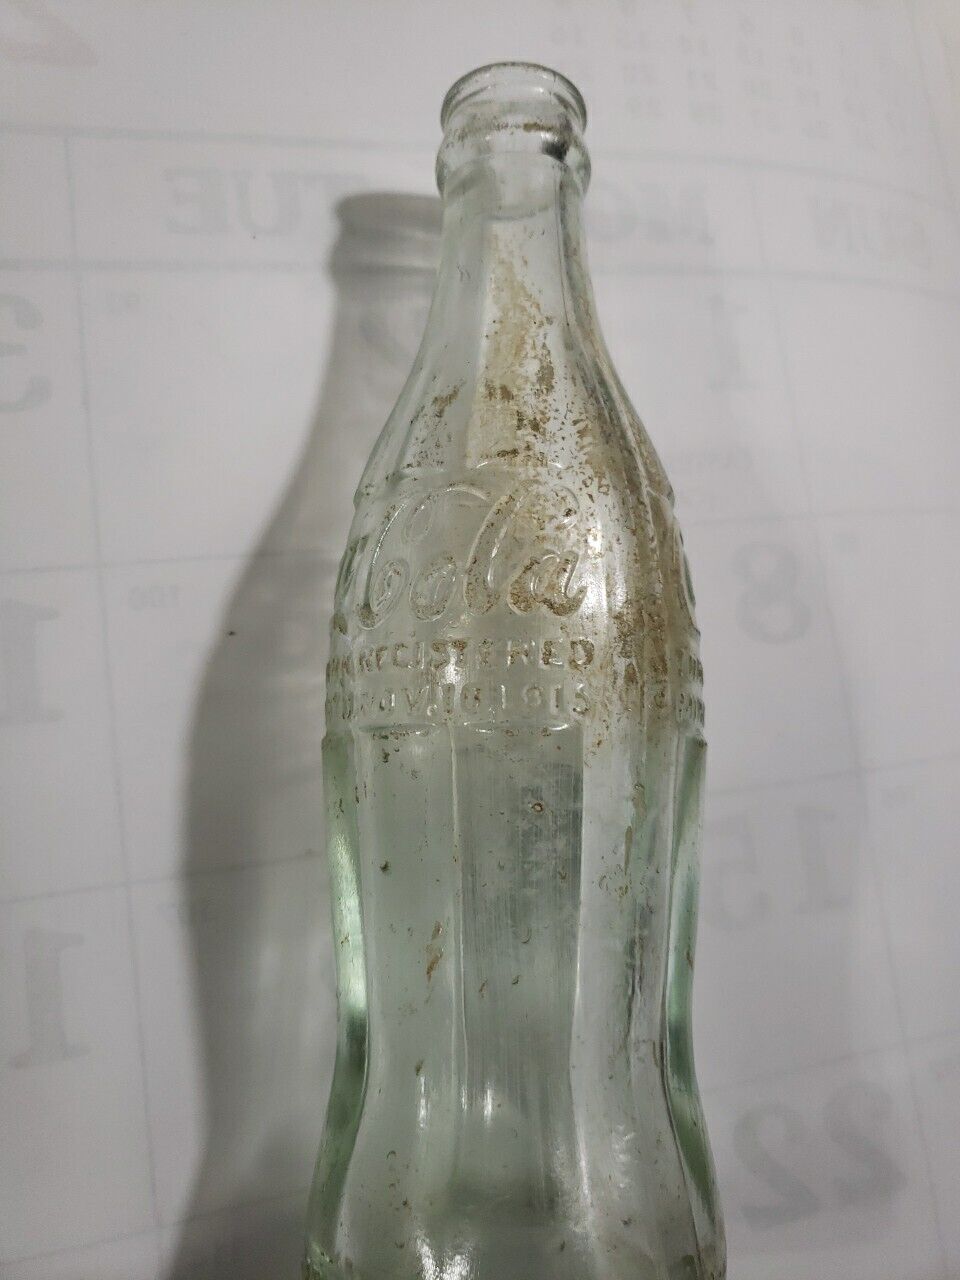 Pat NOV 16 1915 Greenville Miss Mississippi Coca Cola Coke Bottle Scarce Chatt